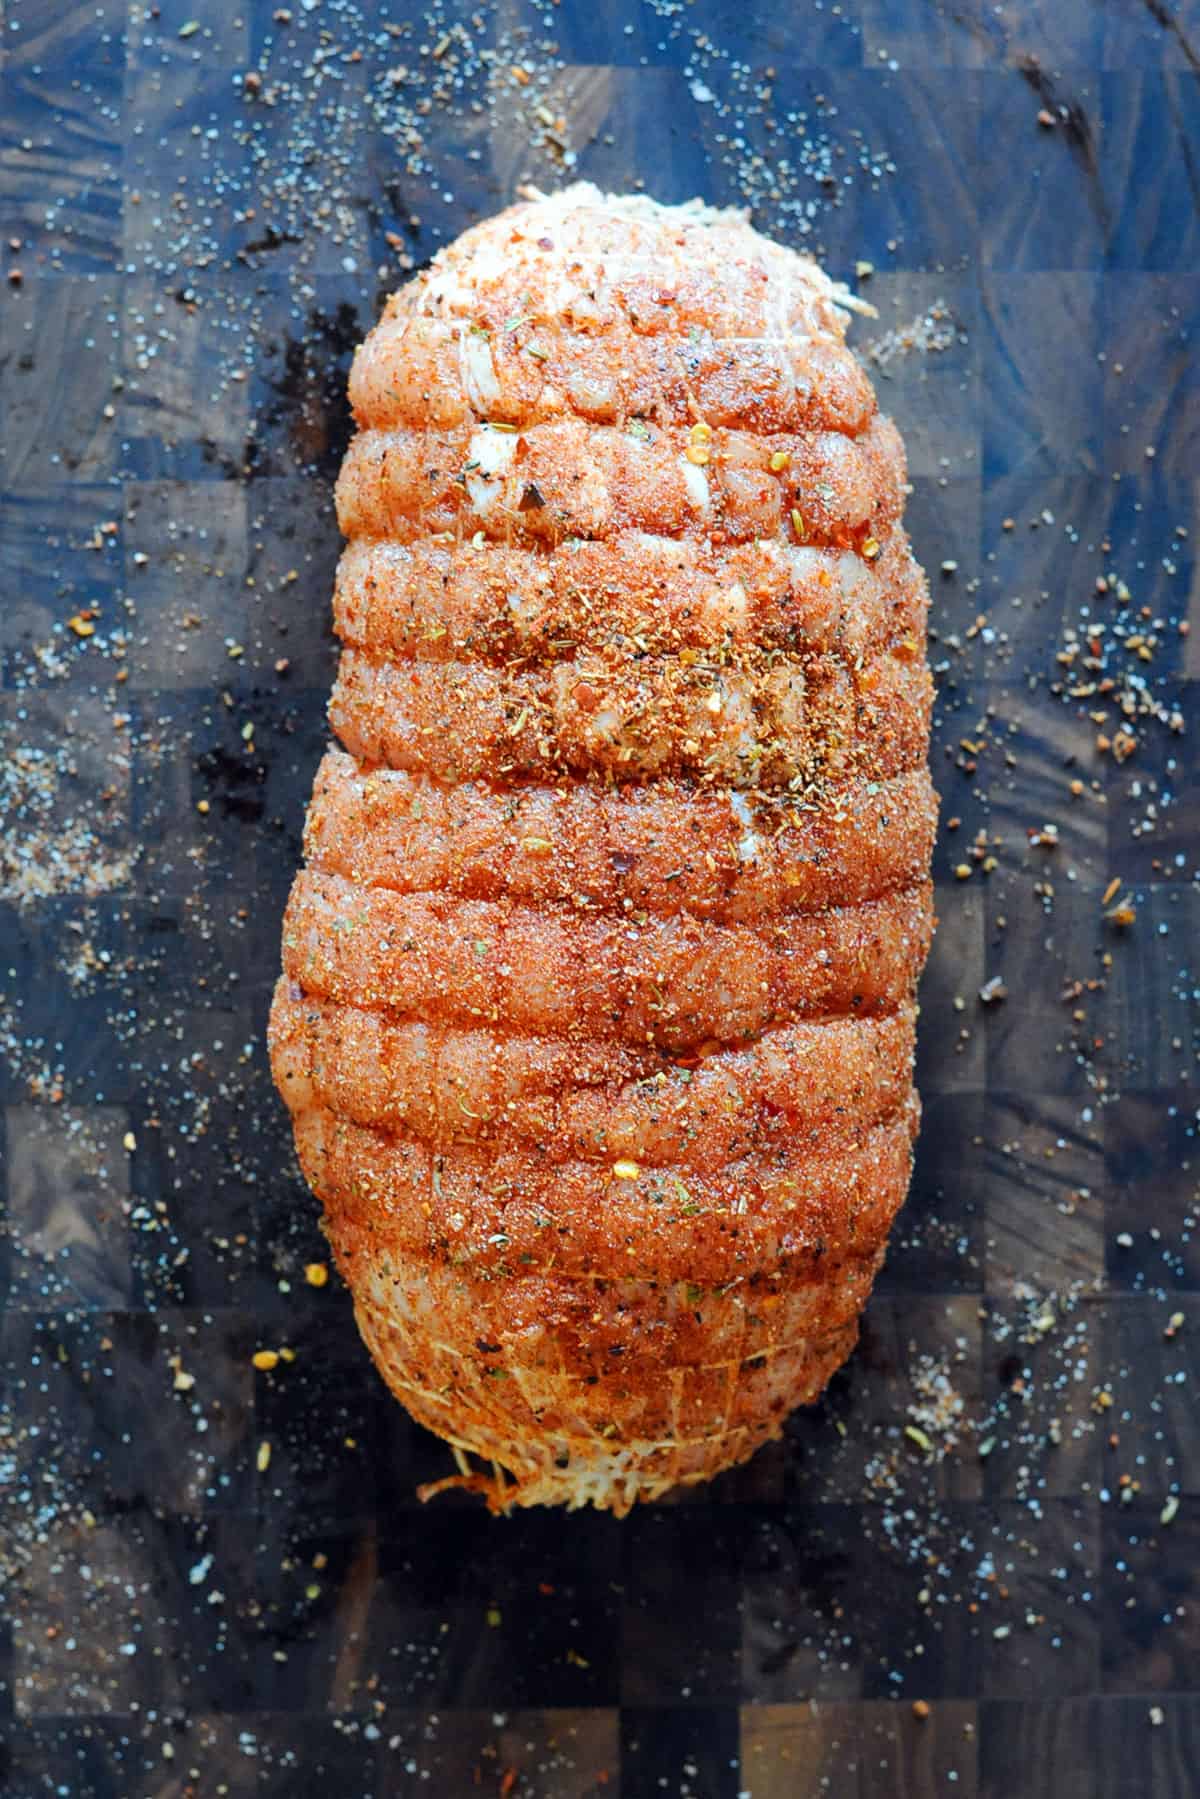 Turkey roast seasoned. 